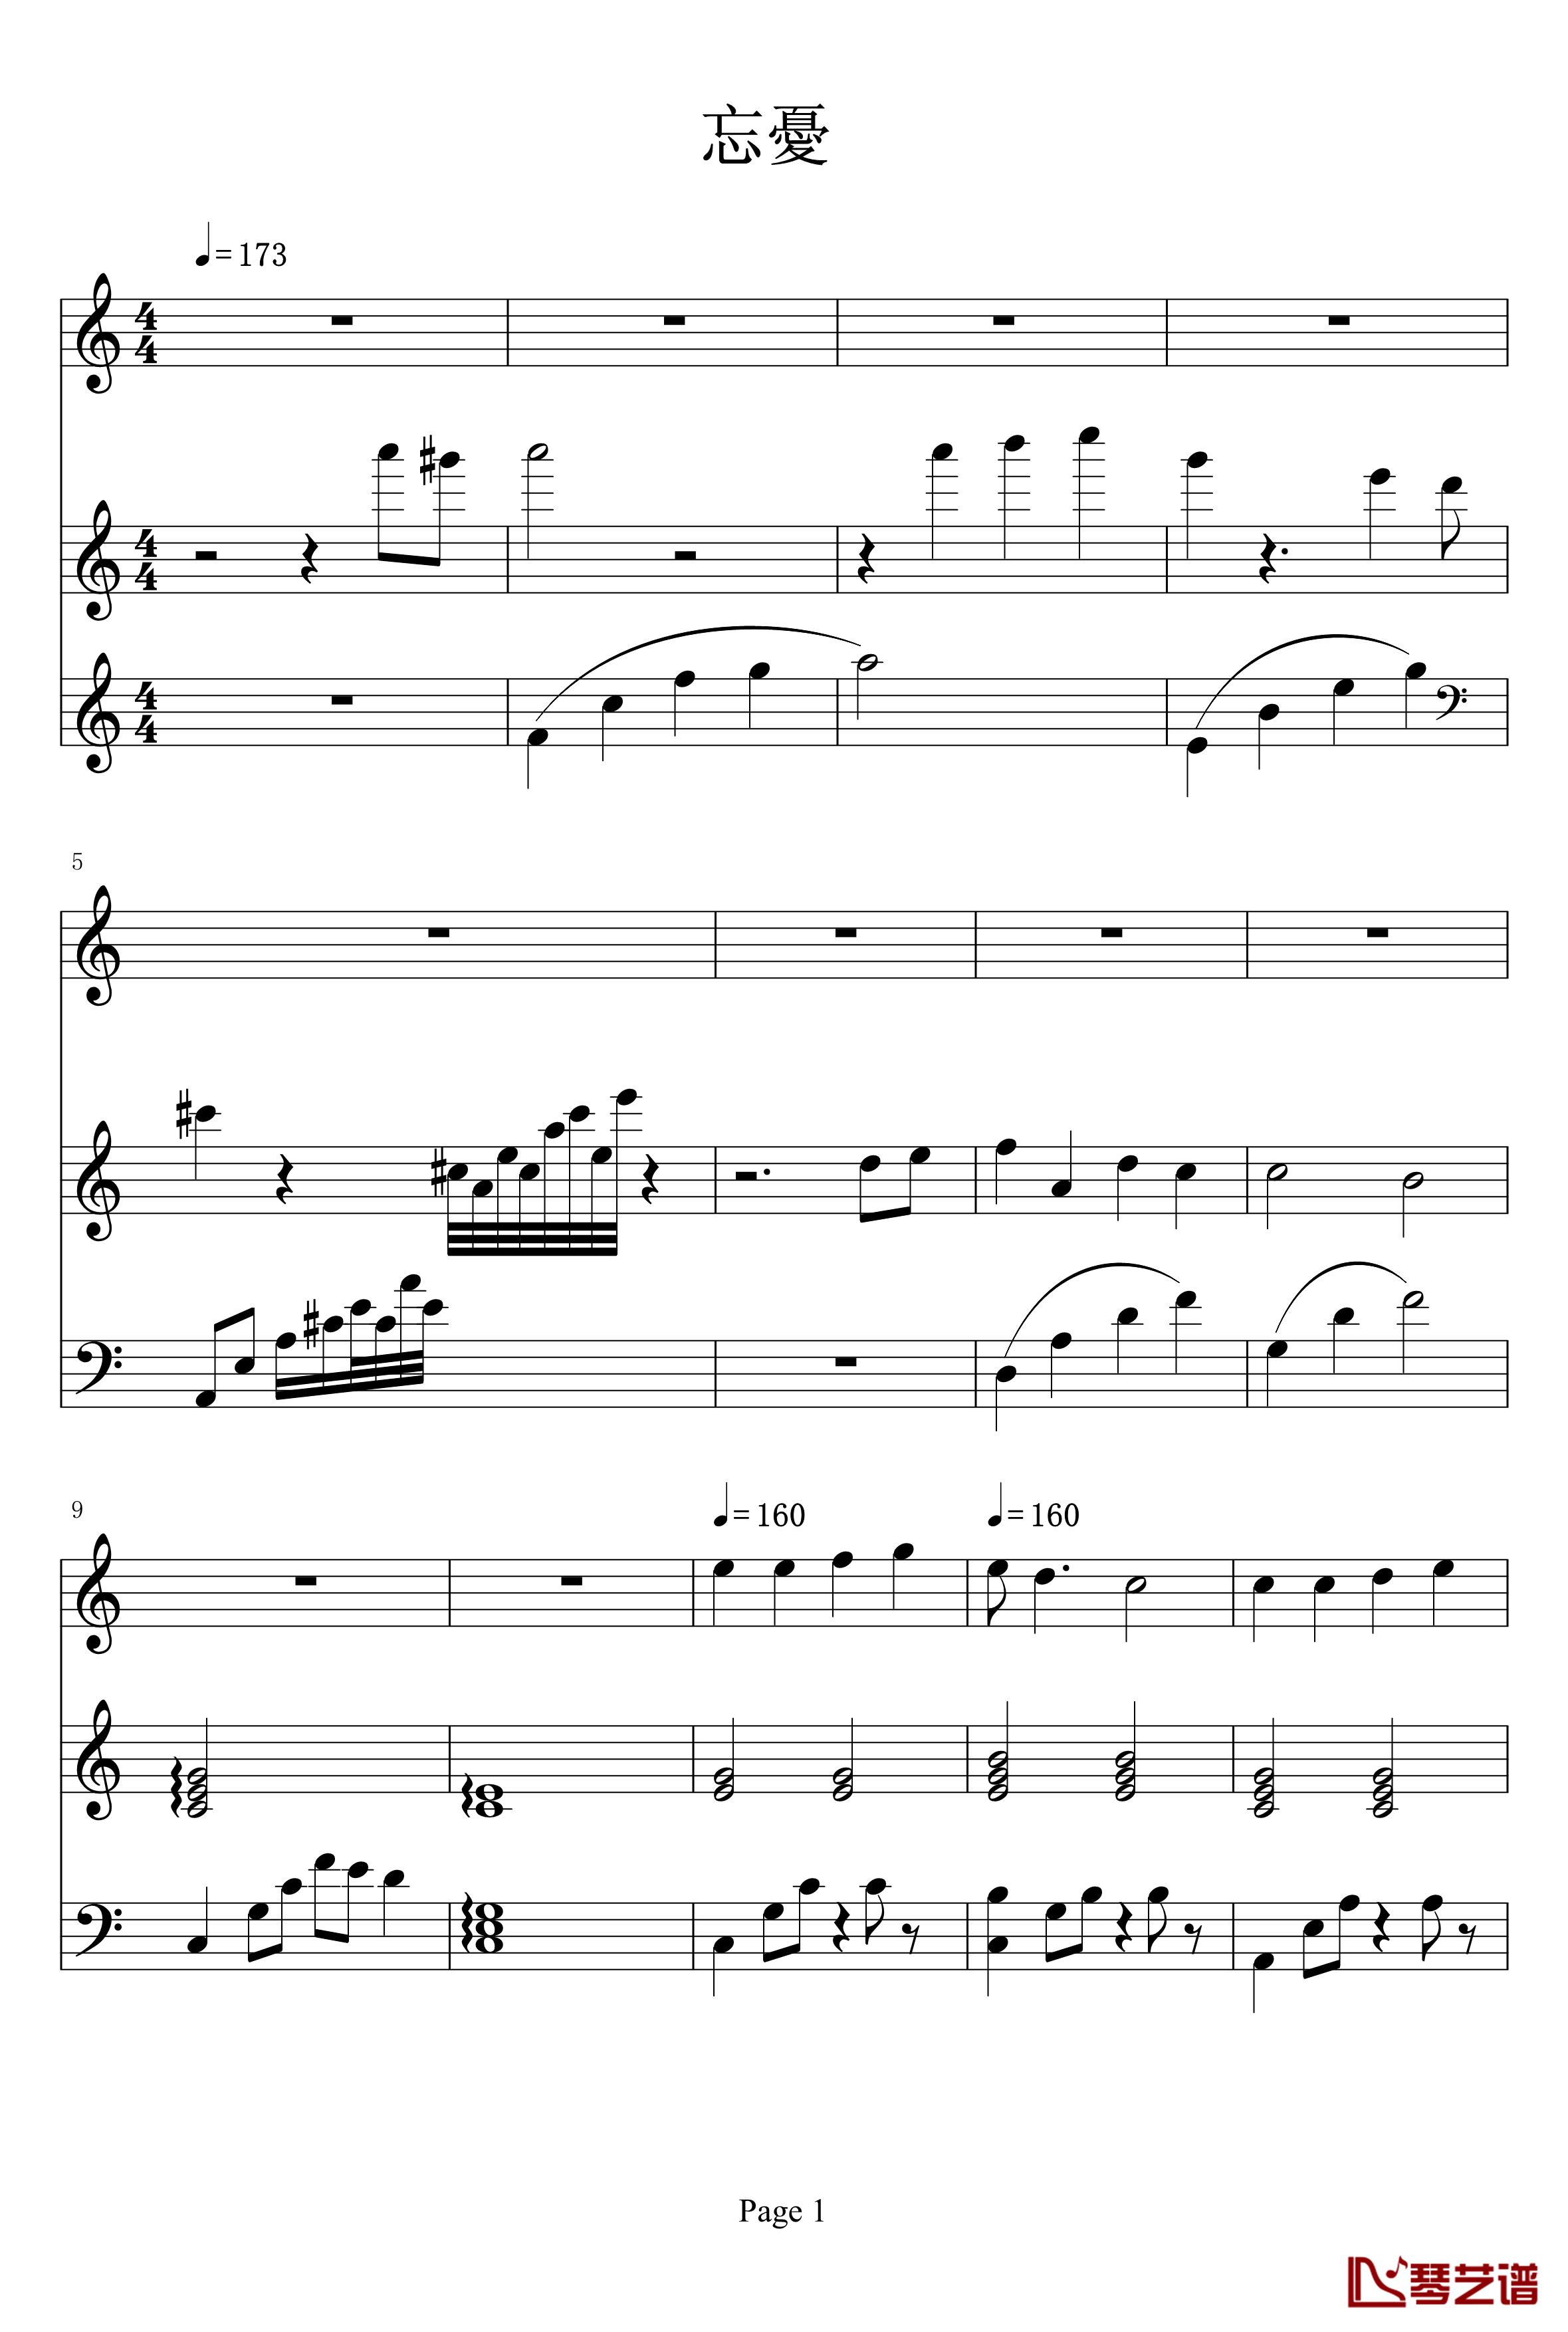 忘夏钢琴谱-分享曲目-未知分类1